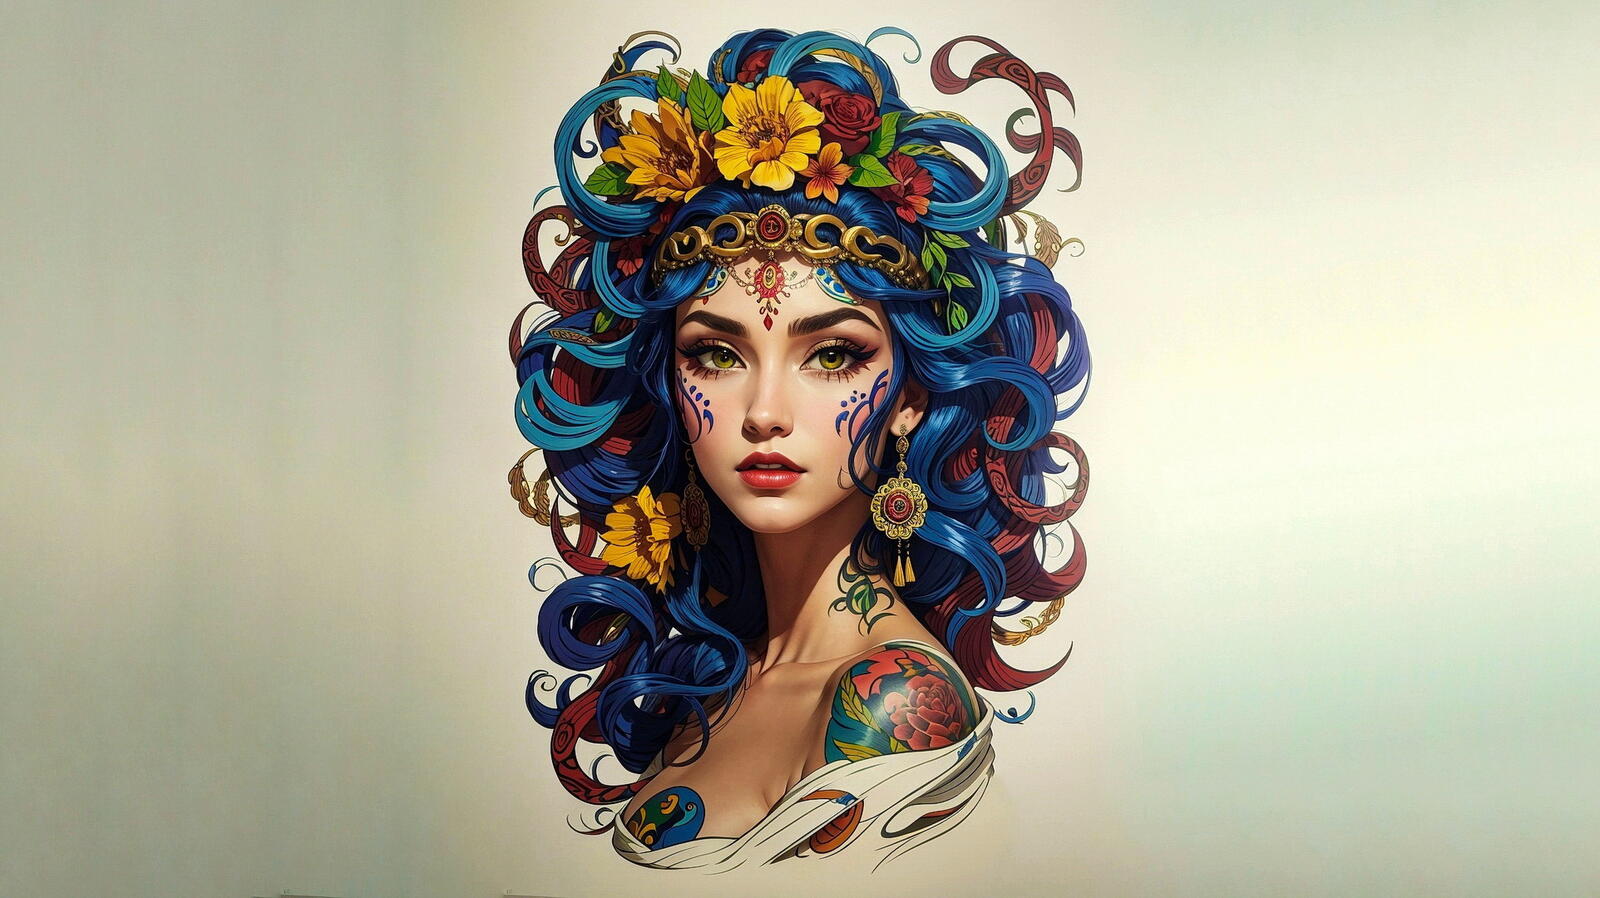 Бесплатное фото Девушка с синими волосами и цветы